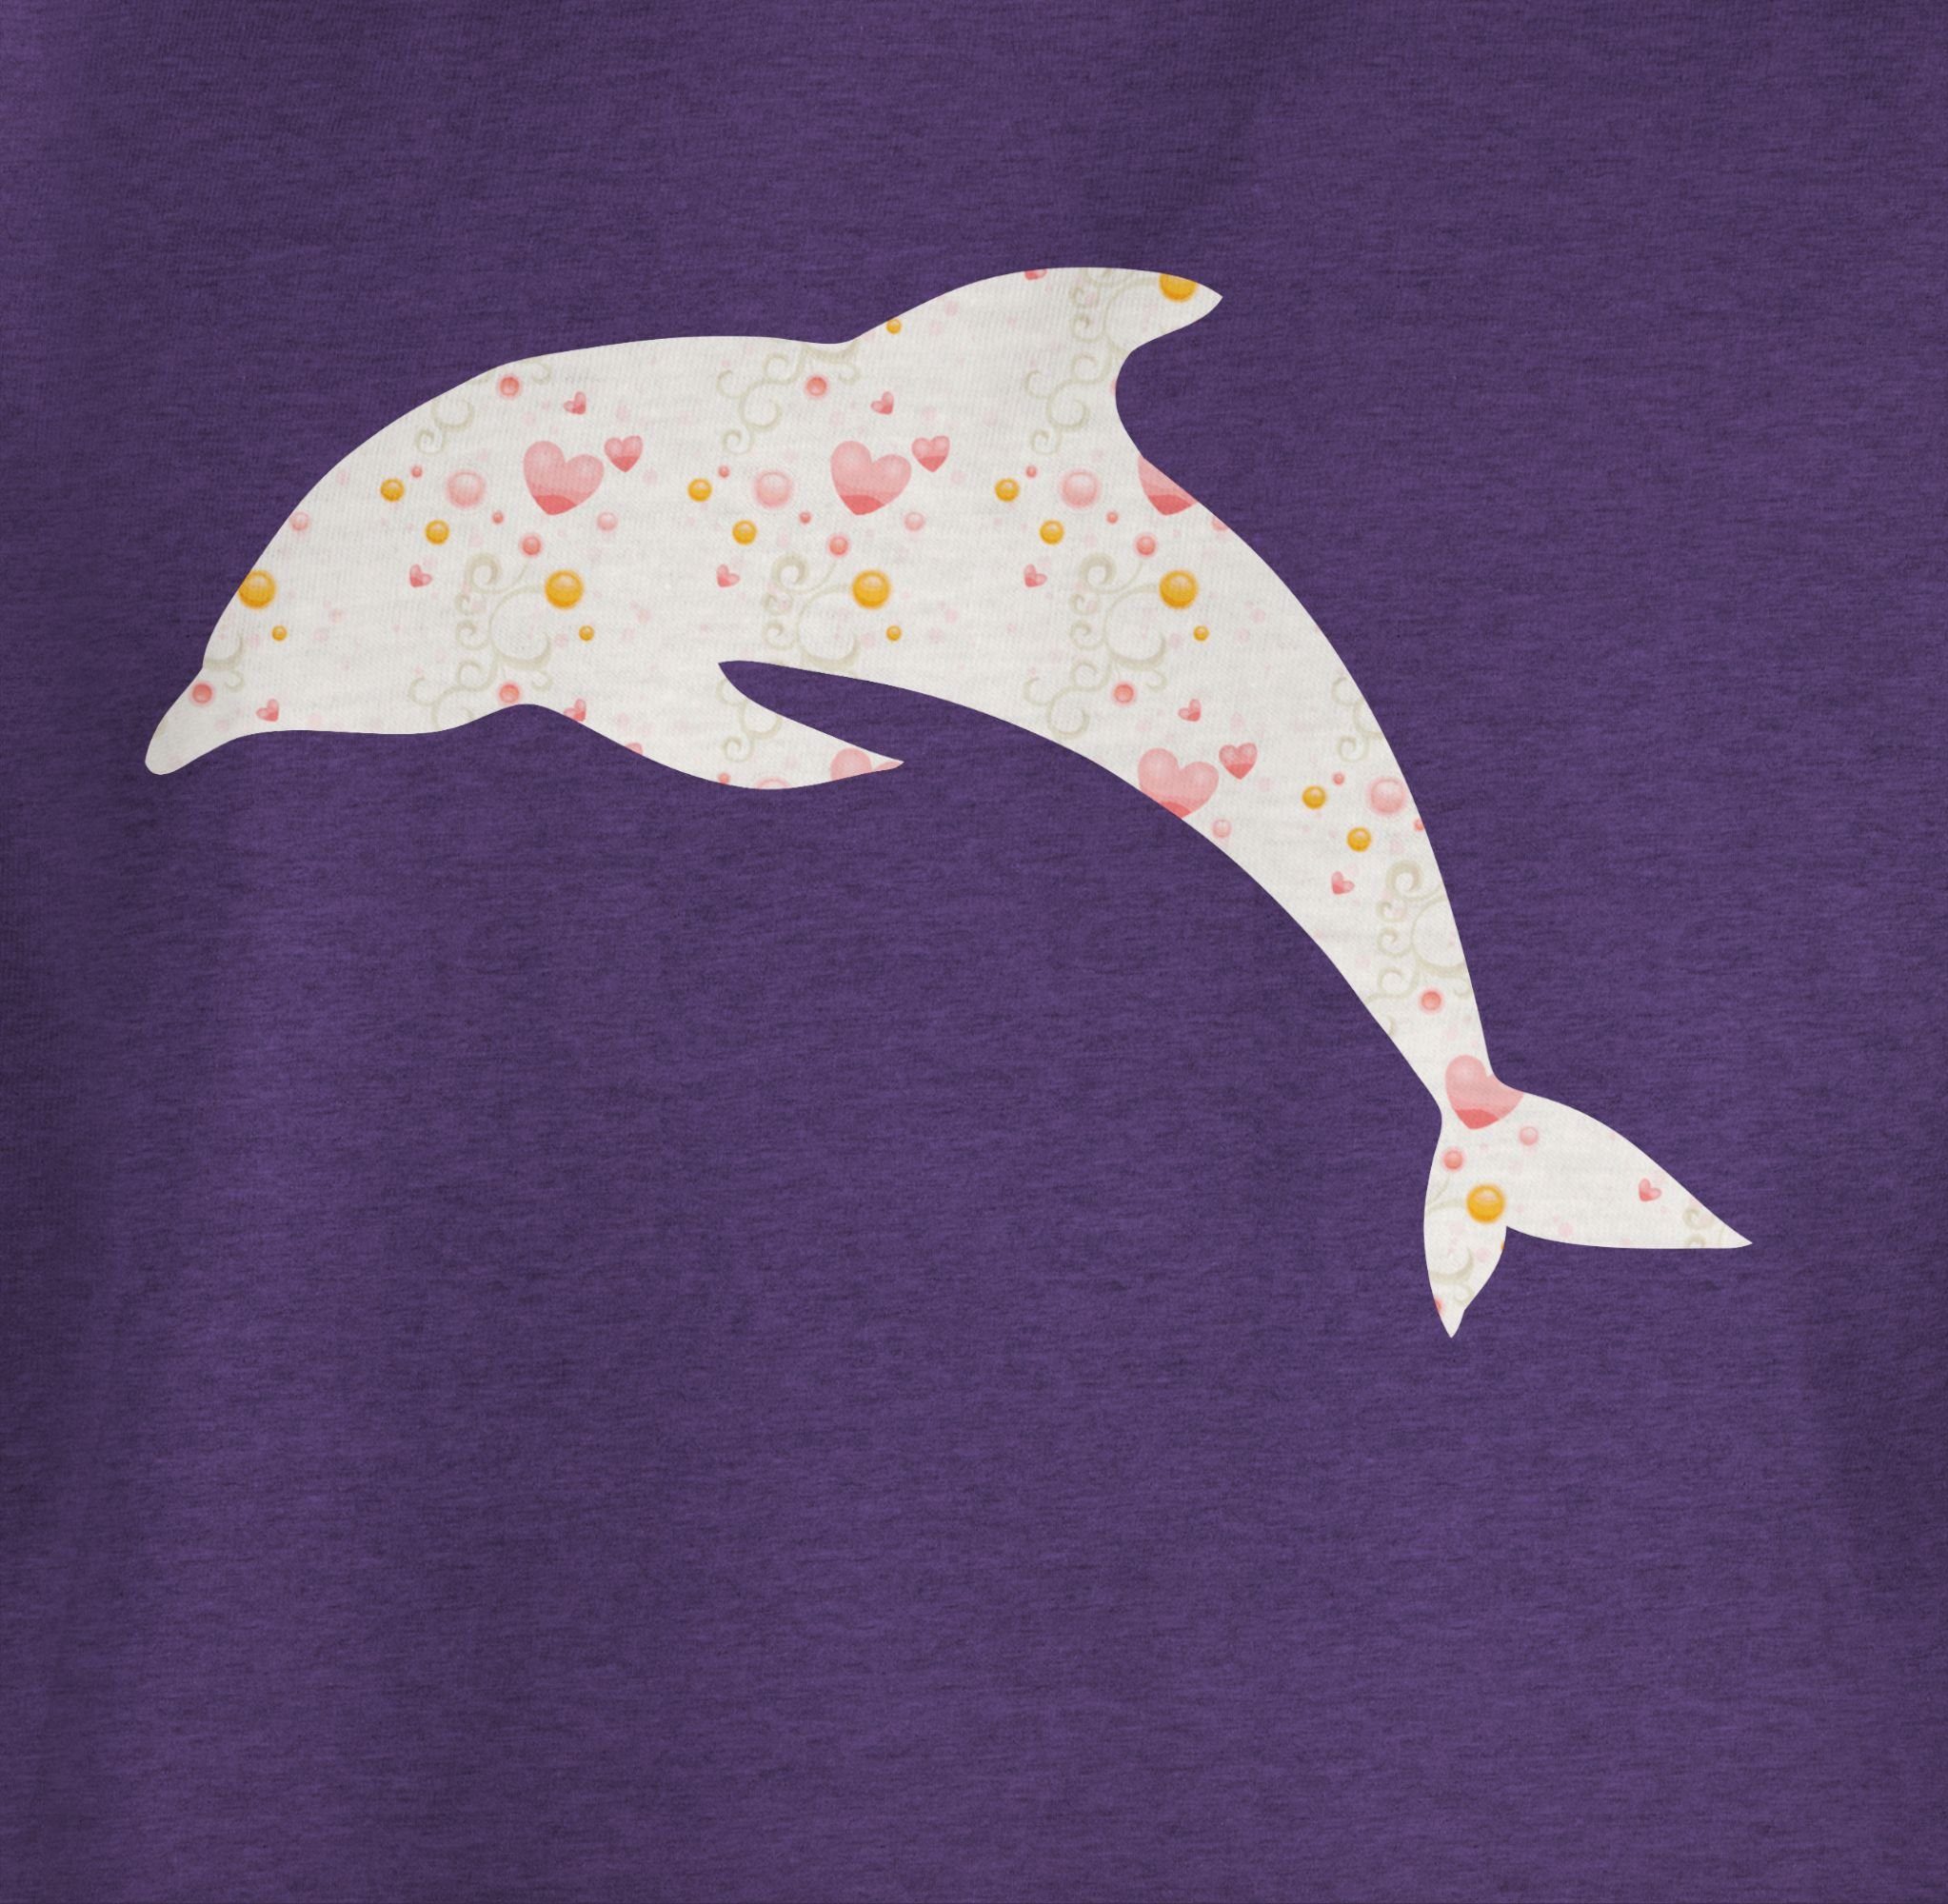 Print Shirtracer 2 Meliert Tiermotiv Delfin T-Shirt Herzen Animal Lila